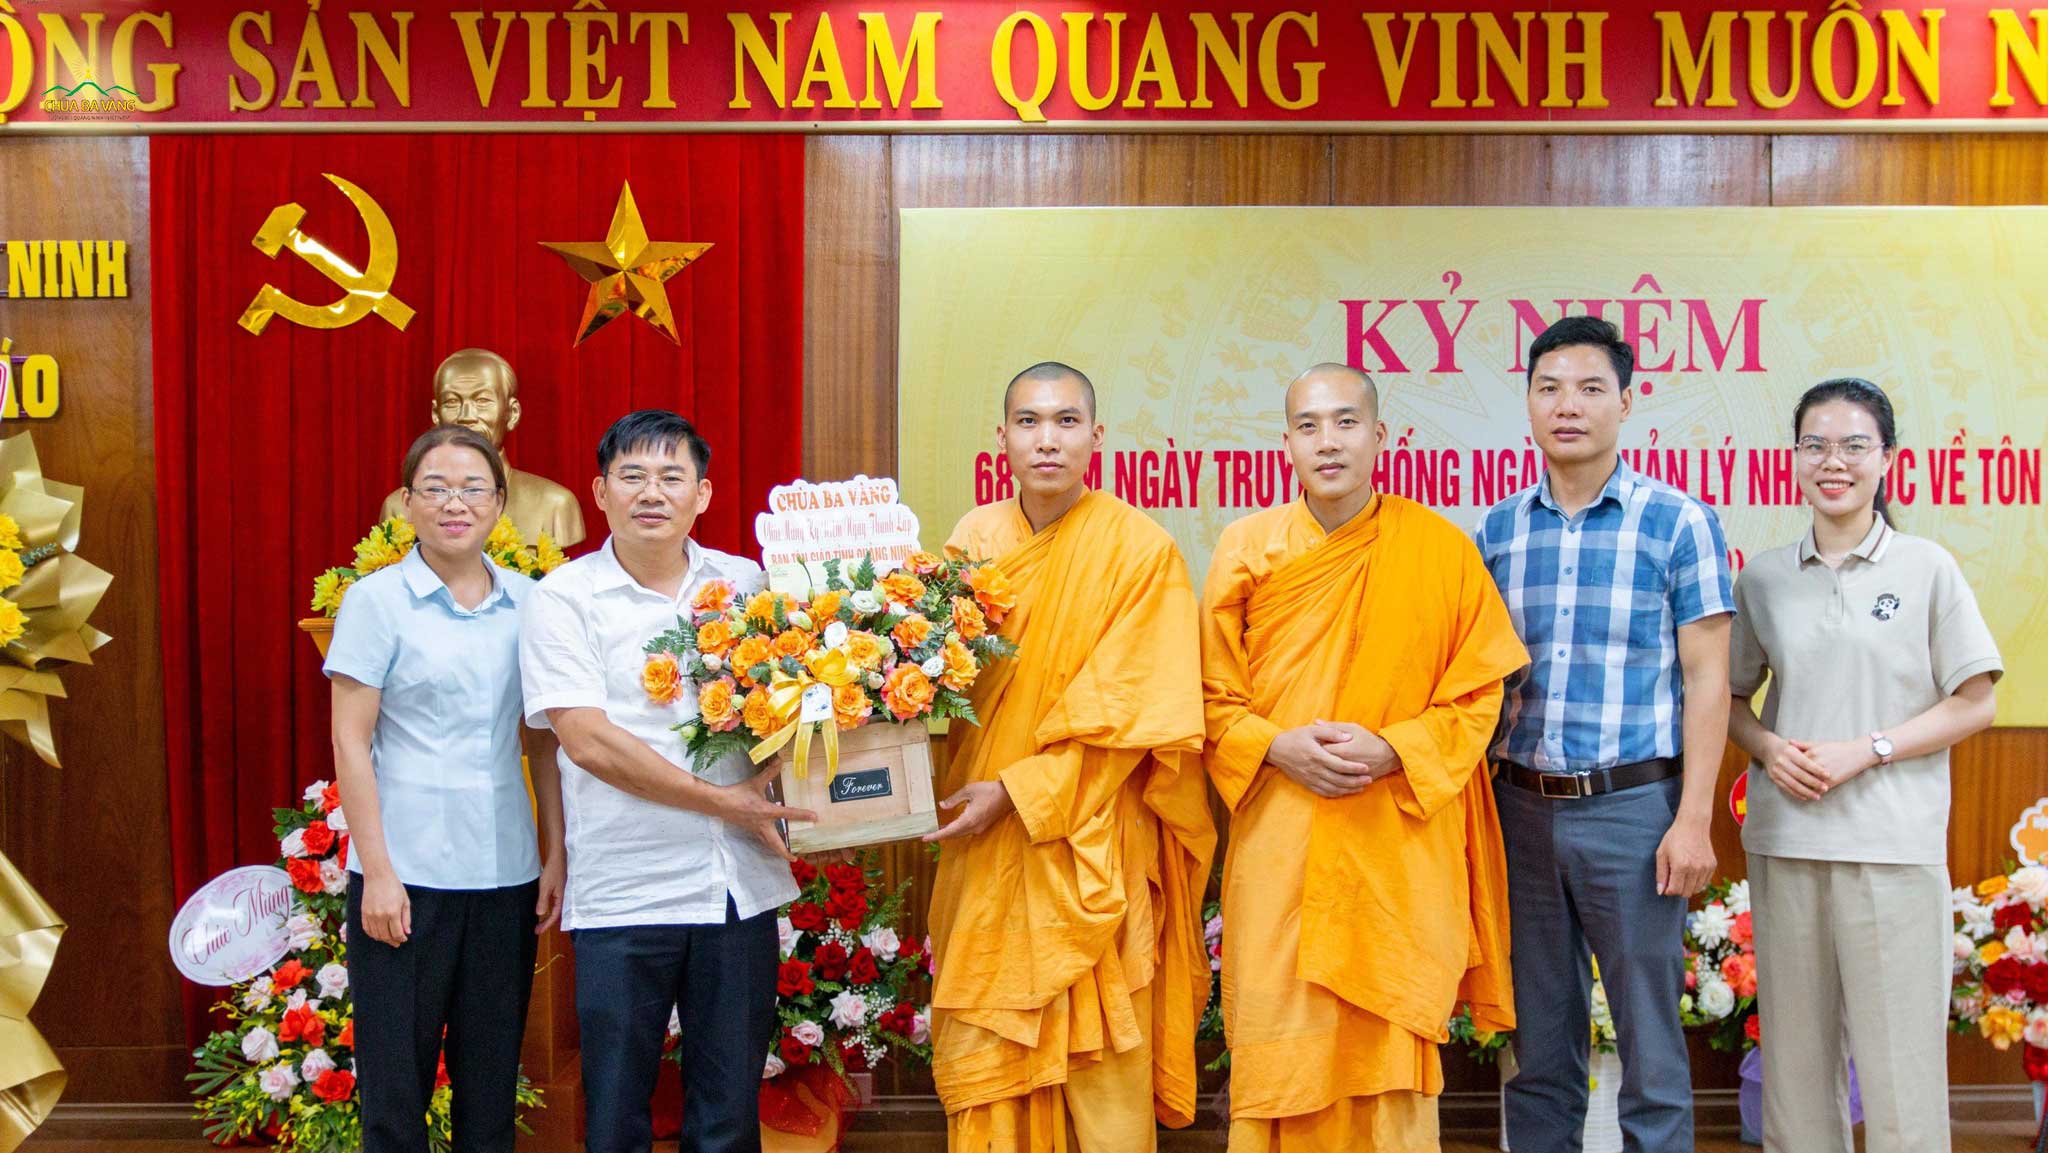 Chùa Ba Vàng chúc mừng Ban Tôn giáo tỉnh Quảng Ninh